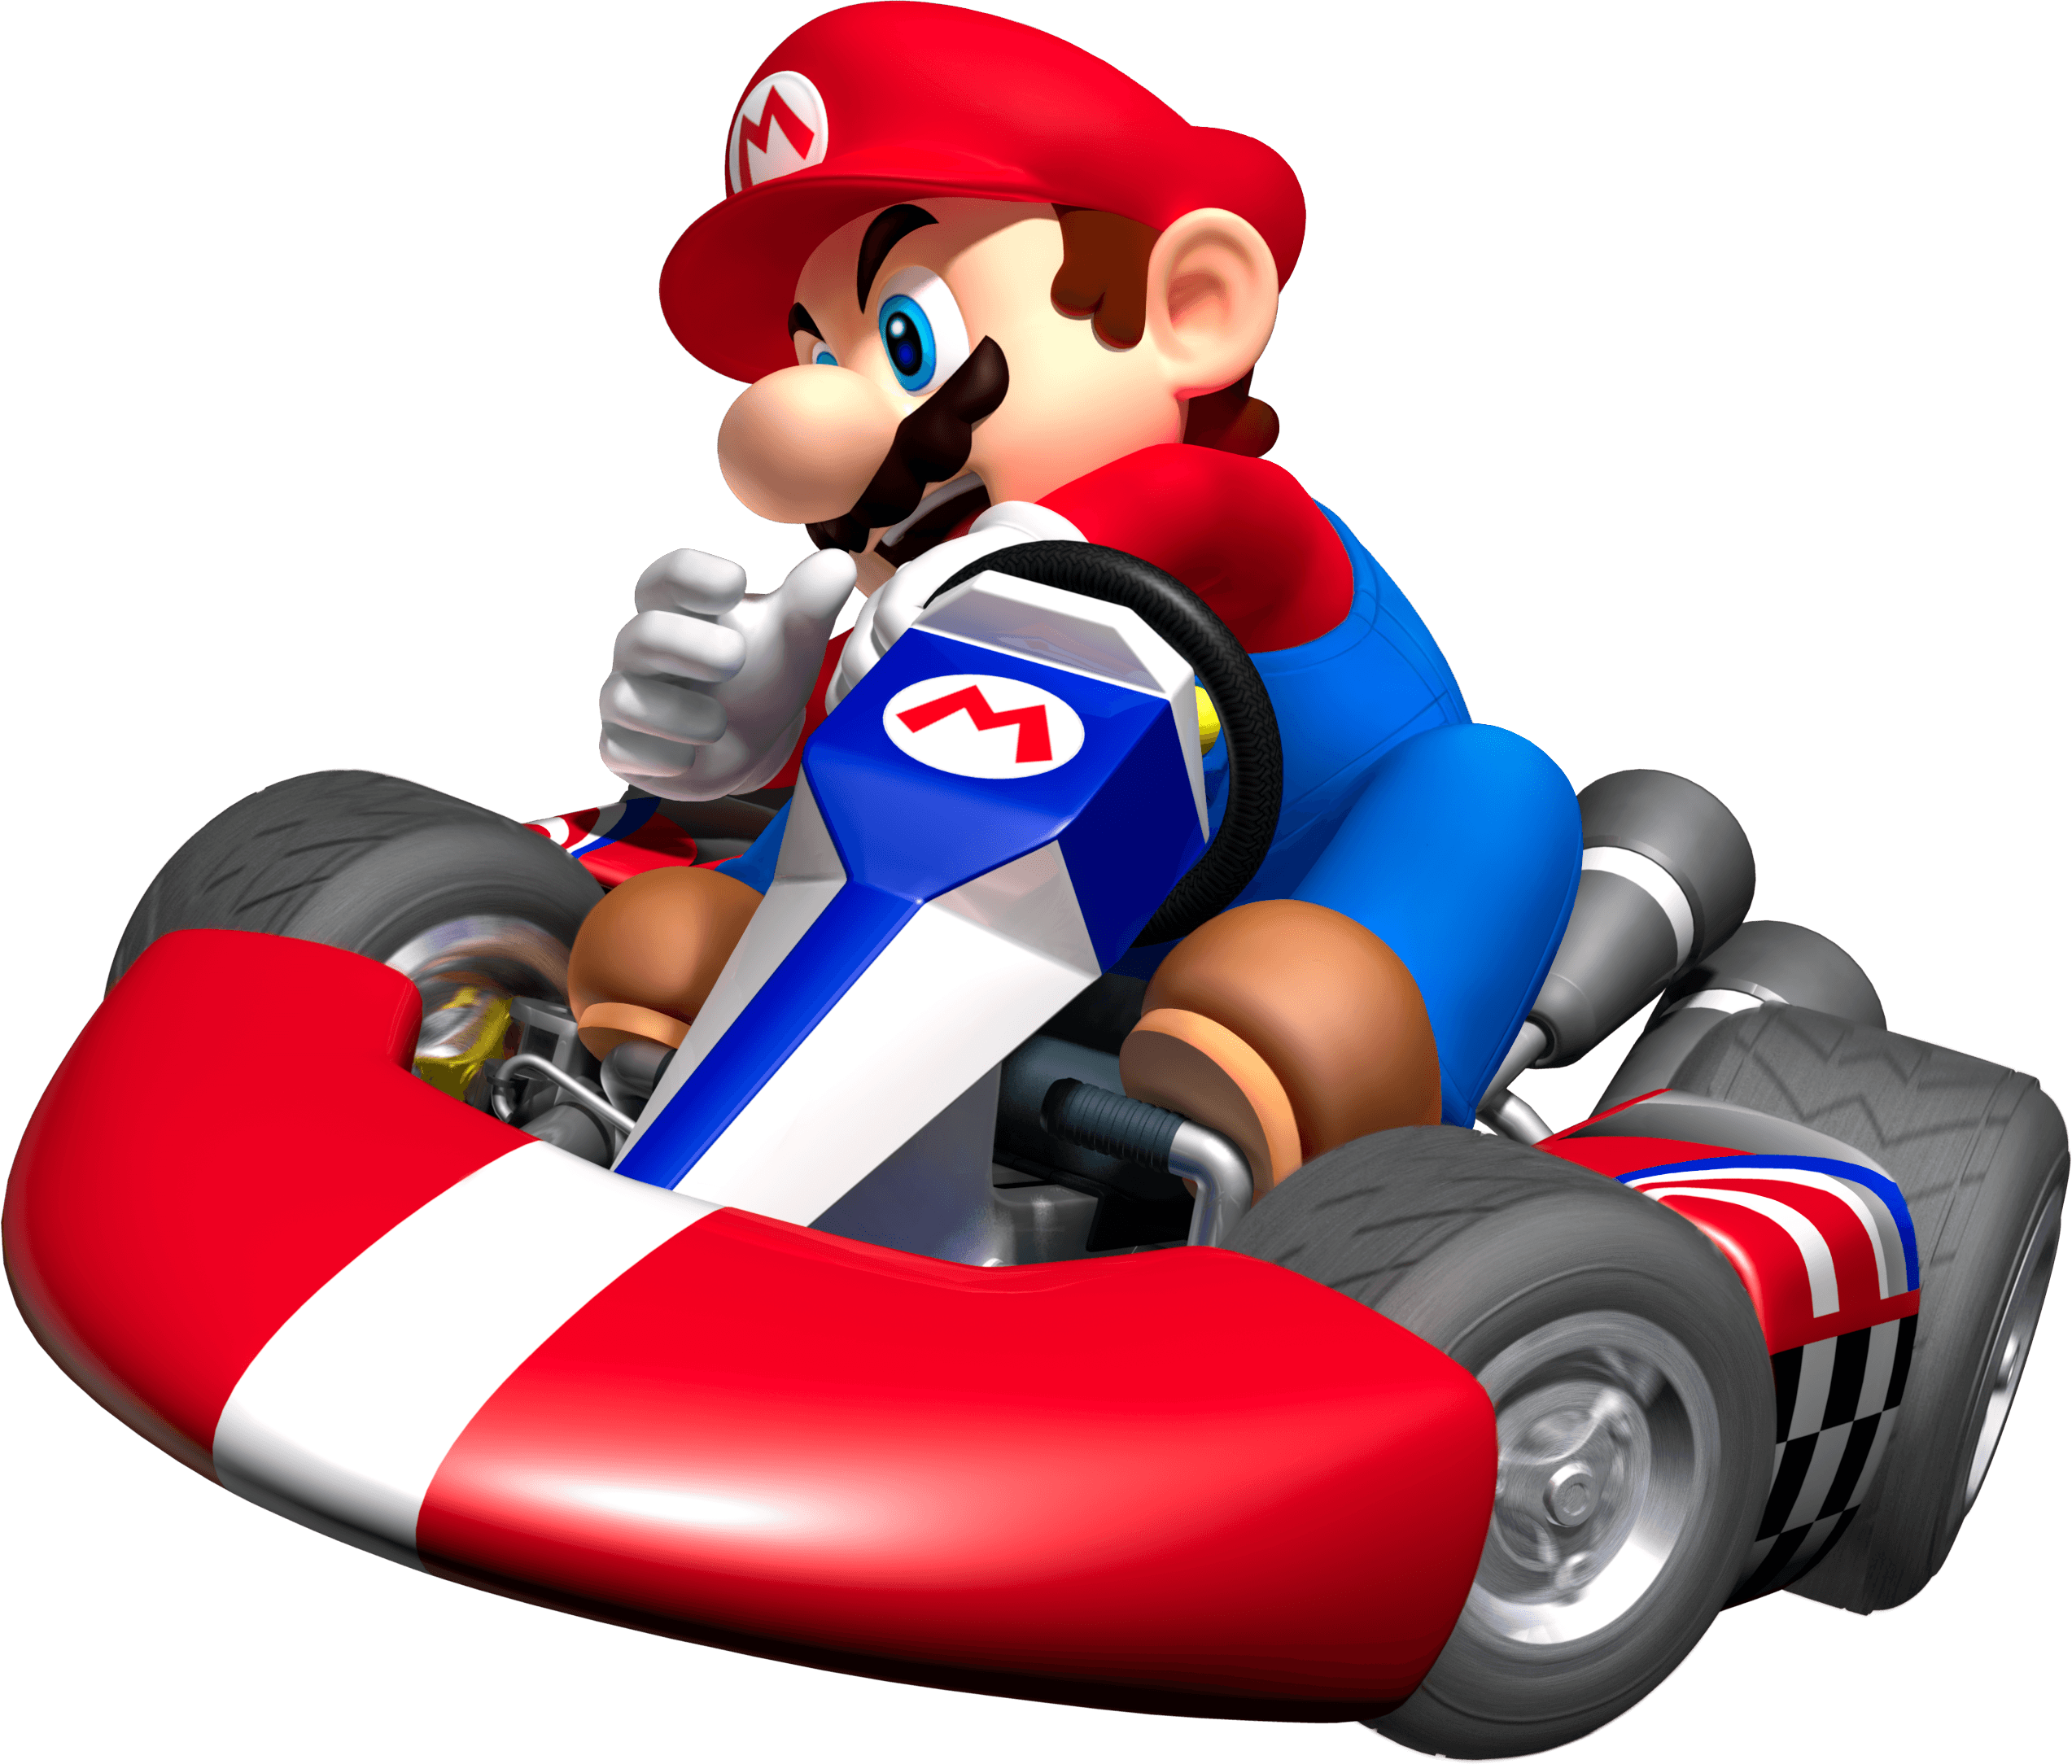 Mario kart wii custom characters - gaseplatinum